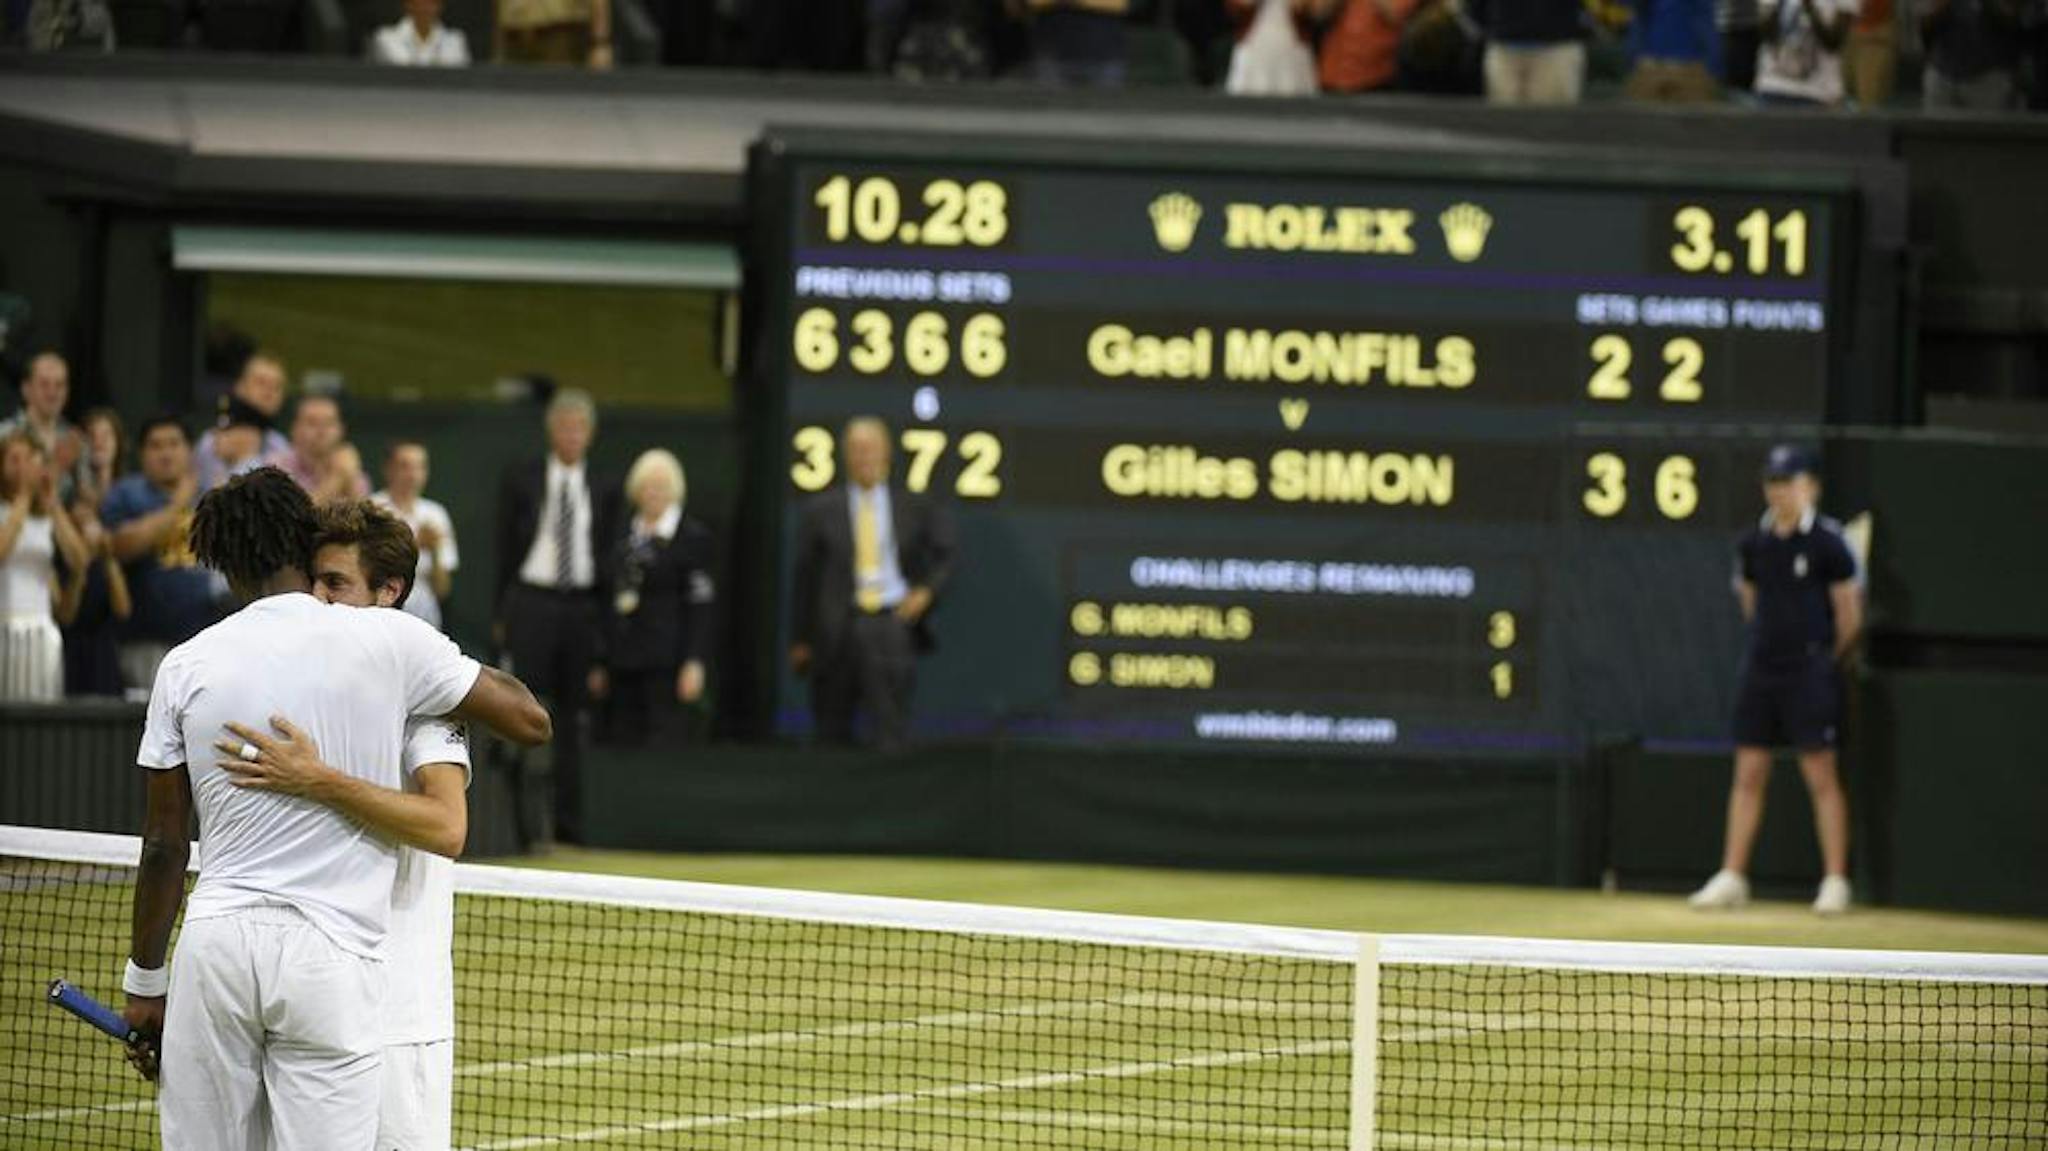 Les matchs entre les amis Gilles Simon et Gaël Monfils ont souvent été longs, et souvent en faveur de "Gilou" (7-3), qui s'est appuyé sur ses fondamentaux tactiques, comme ici à Wimbledon en 2015.